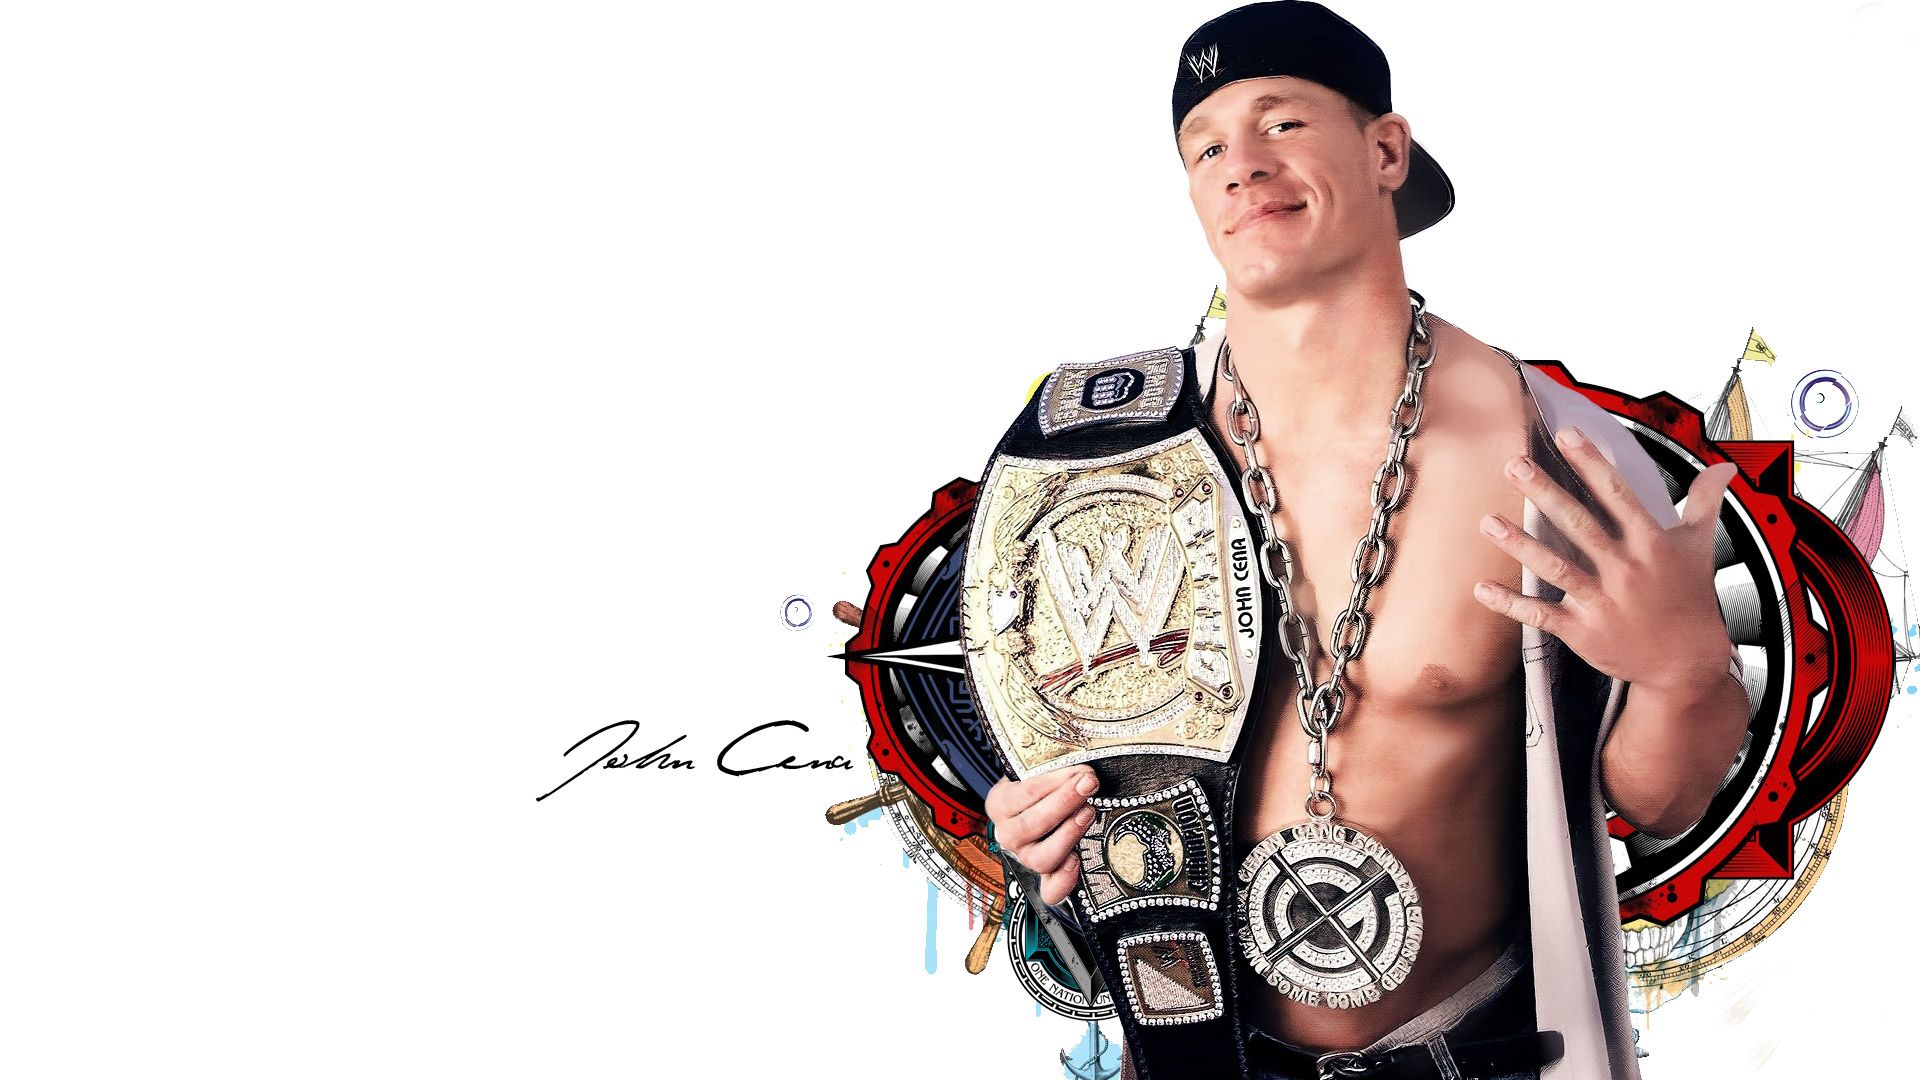 John Cena Wallpaper For Desktop HD On